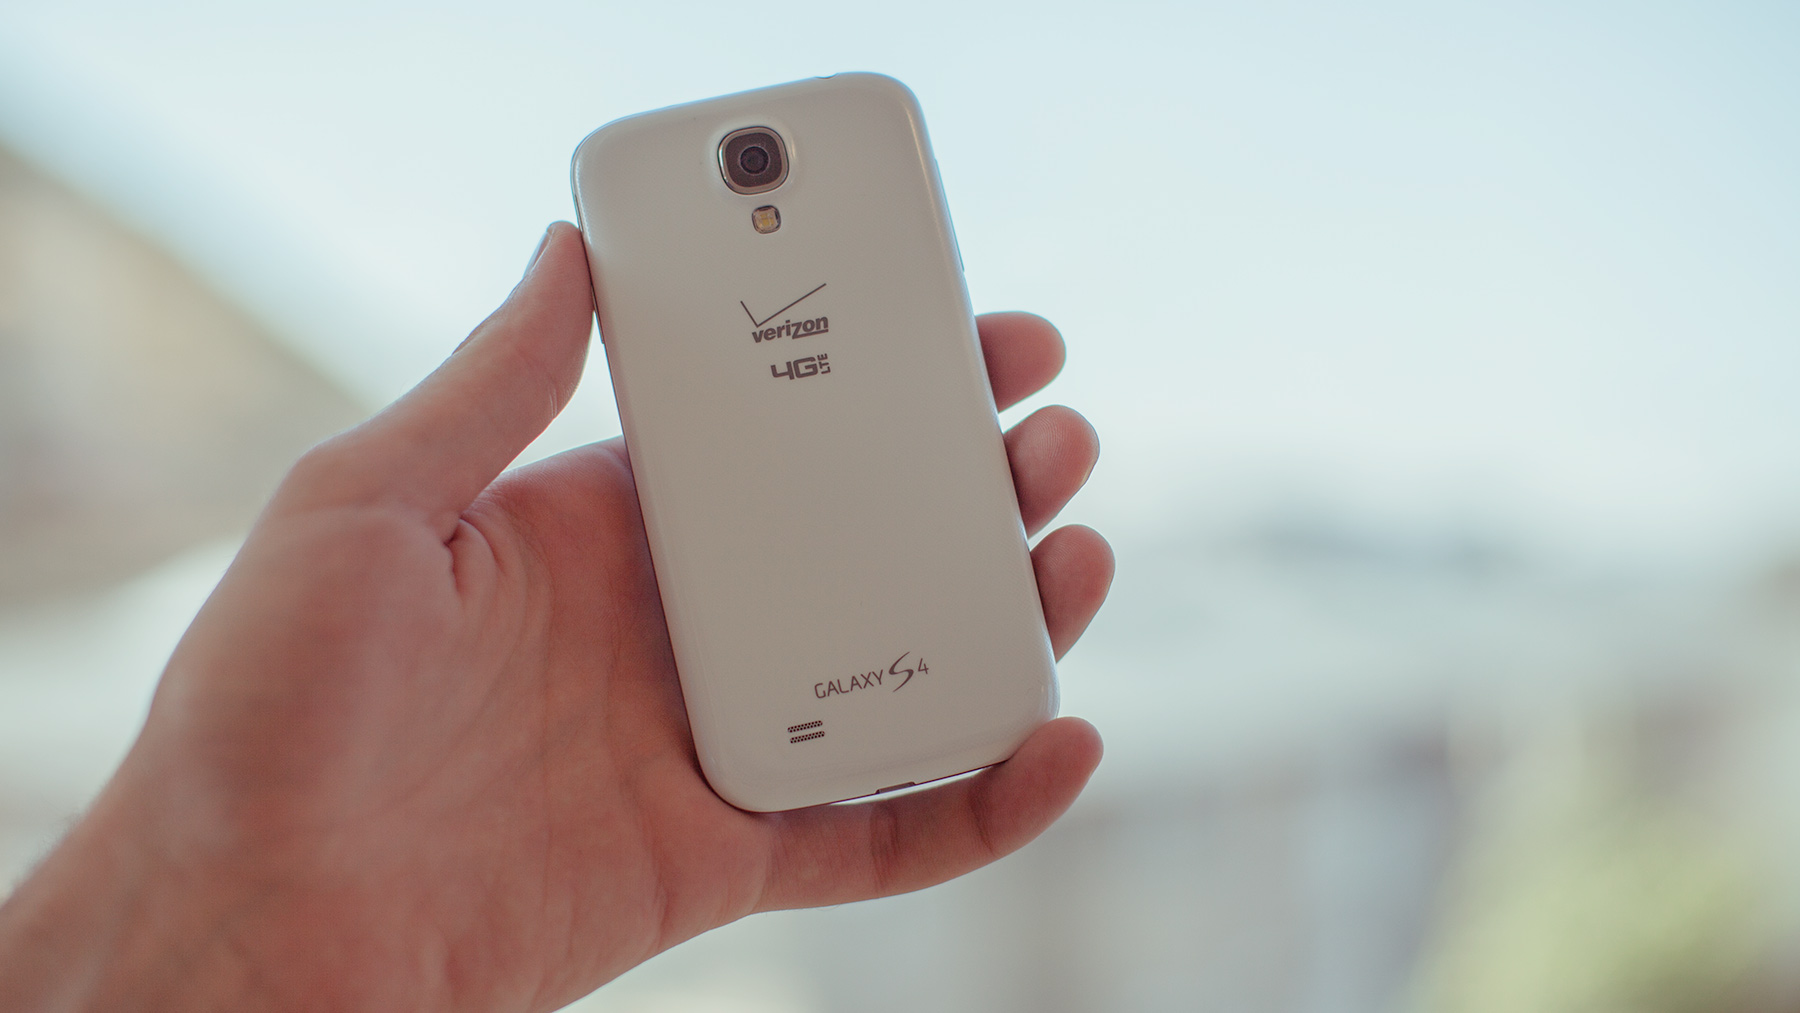 Samsung Galaxy S4 in white